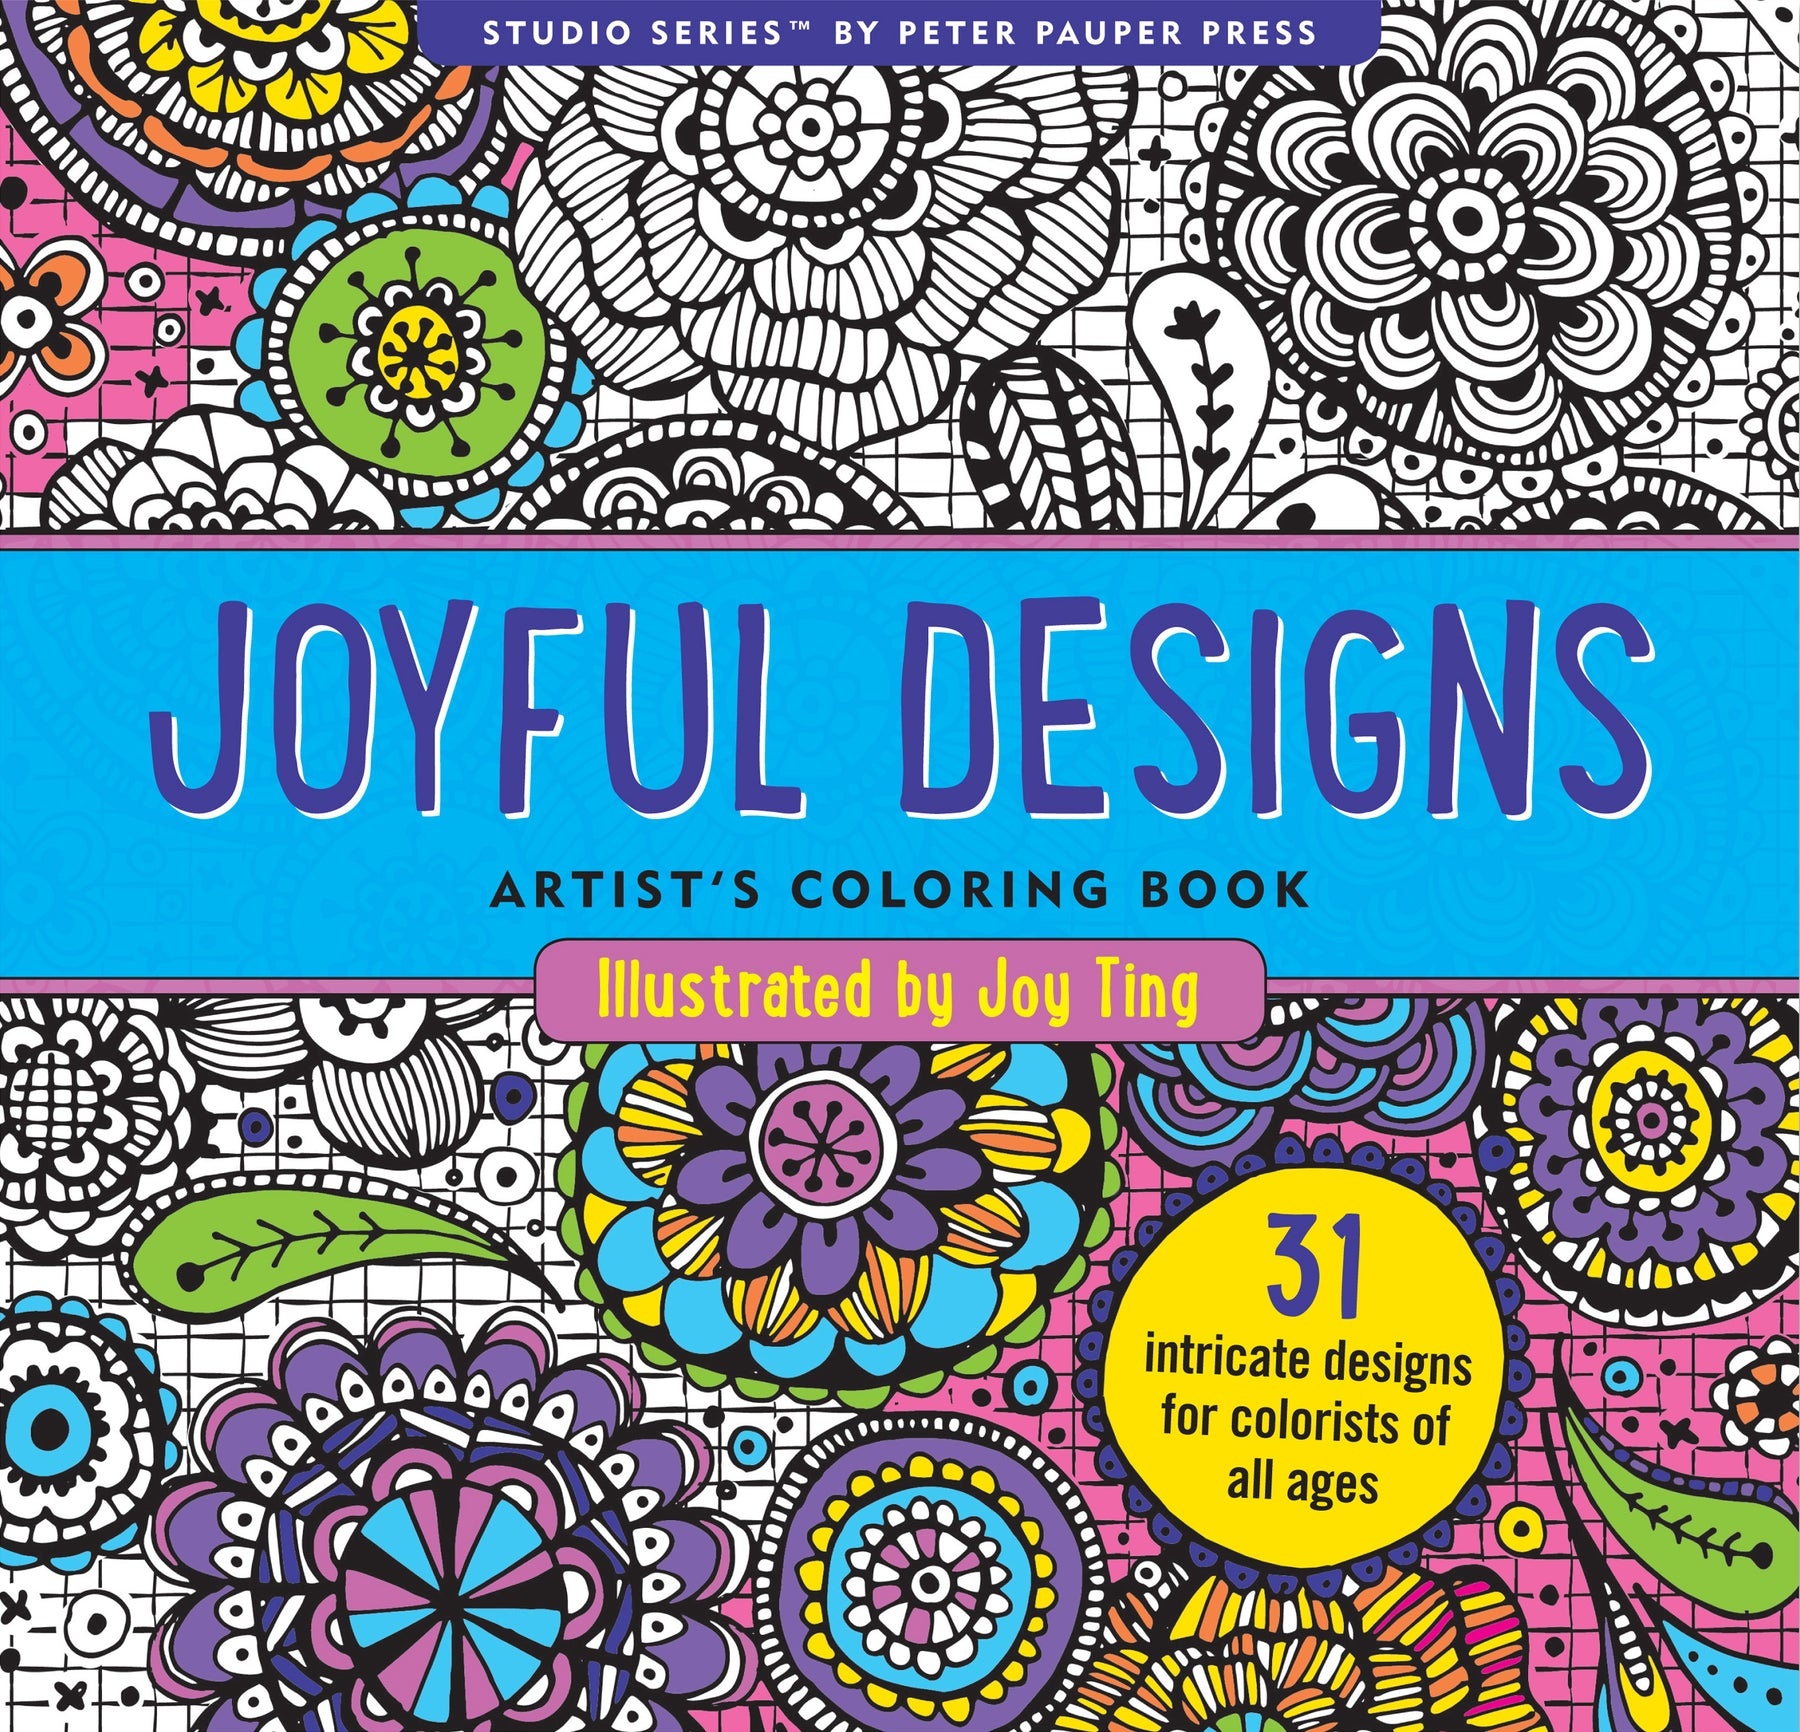 Joyful Designs Kleurboek